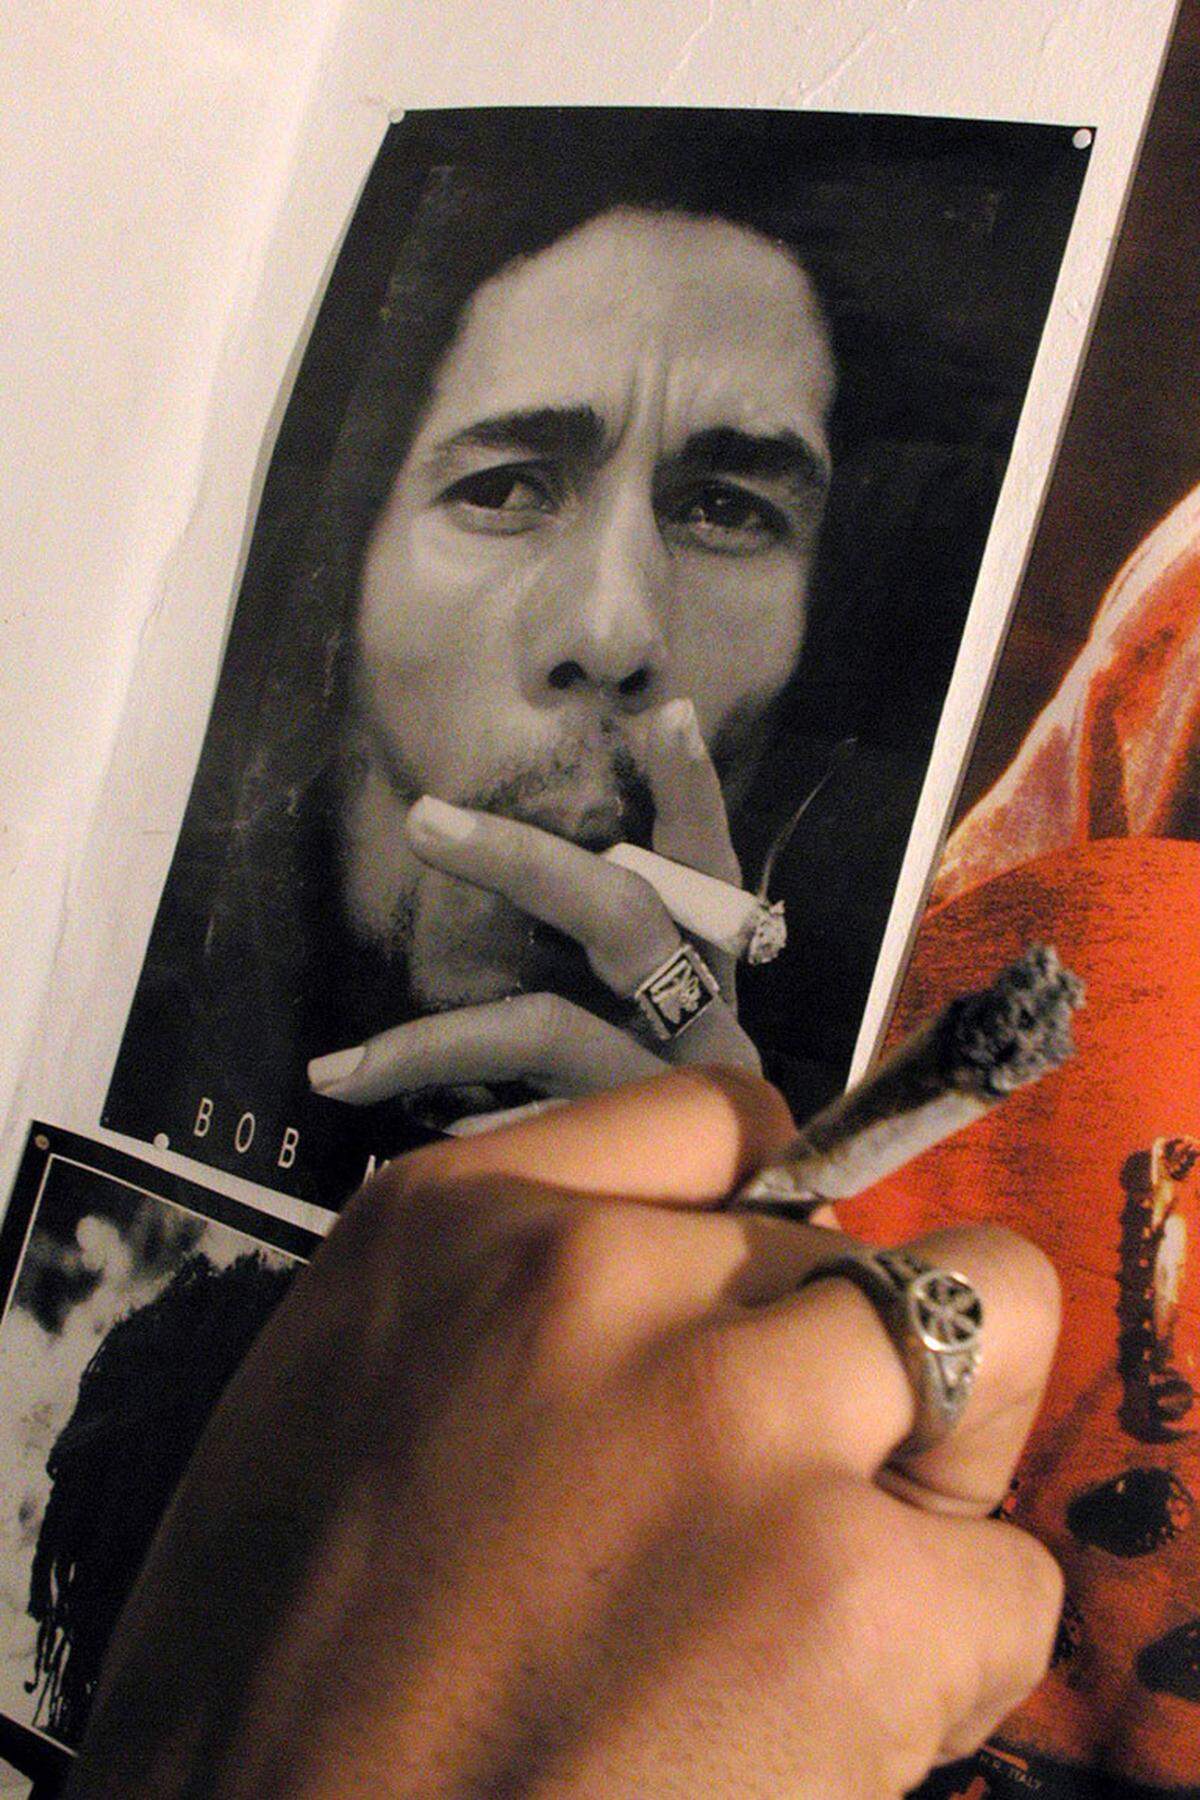 Bob-Marley-Eistee, Bob-Marley-Feuerzeuge und Bob-Marley-Papers gibt es ja schon. Und bald können Fans ihre Sammlung mit einem weiteren Marley-Produkt komplettieren. Denn der verstorbene Musiker, Zeit seines Lebens Verfechter der Cannabis-Legalisierung, soll Namensgeber der "weltweit ersten globalen Cannabis-Marke" werden: "Marley Natural" werde im Zuge der Legalisierung von Marihuana in mehreren US-Bundesstaaten als "Cannabis der Premiumklasse" vermarktet, teilte die Marleys Familie mit.  Das Rauschmittel sei in Zusammenarbeit mit der Firma Privateer im Bundesstaat Washington entwickelt worden. Es solle Ende 2015 auf den Markt kommen.Marley starb am 11. Mai 1981 im Alter von 36 Jahren an Krebs. Den Marihuana-Konsum hatte der  Rastafari stets als Kernbestandteil seines Glaubens betrachtet.